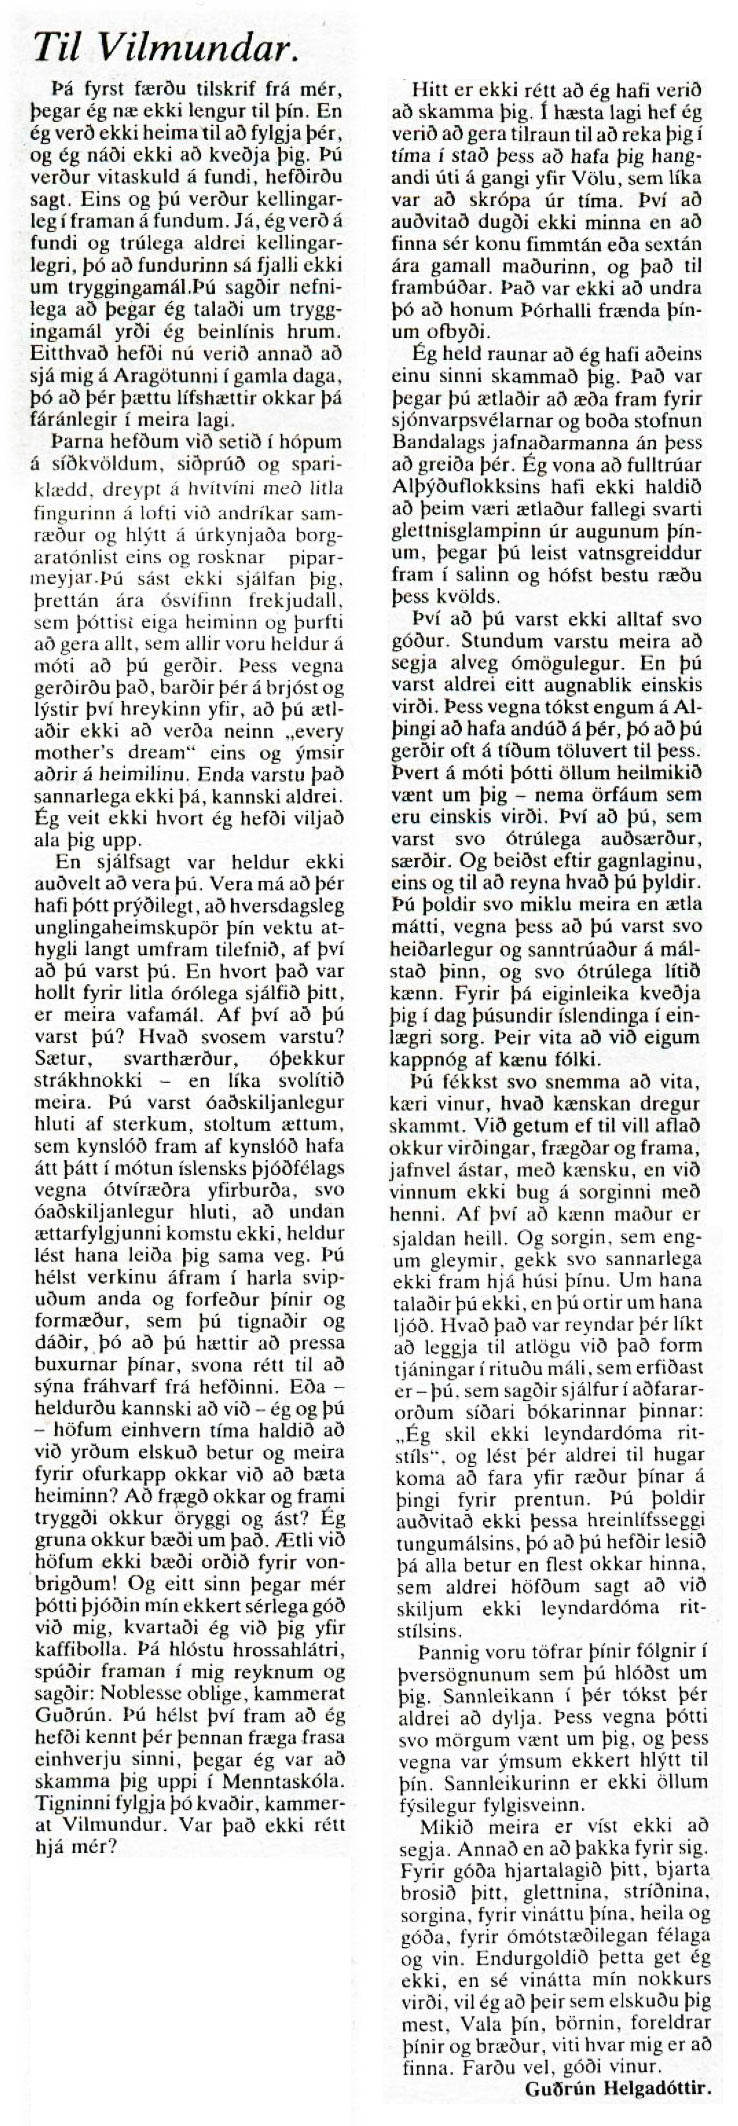 Til Vilmundar - Guðrún Helgadóttir - Þjóðviljinn 28. júní 1983